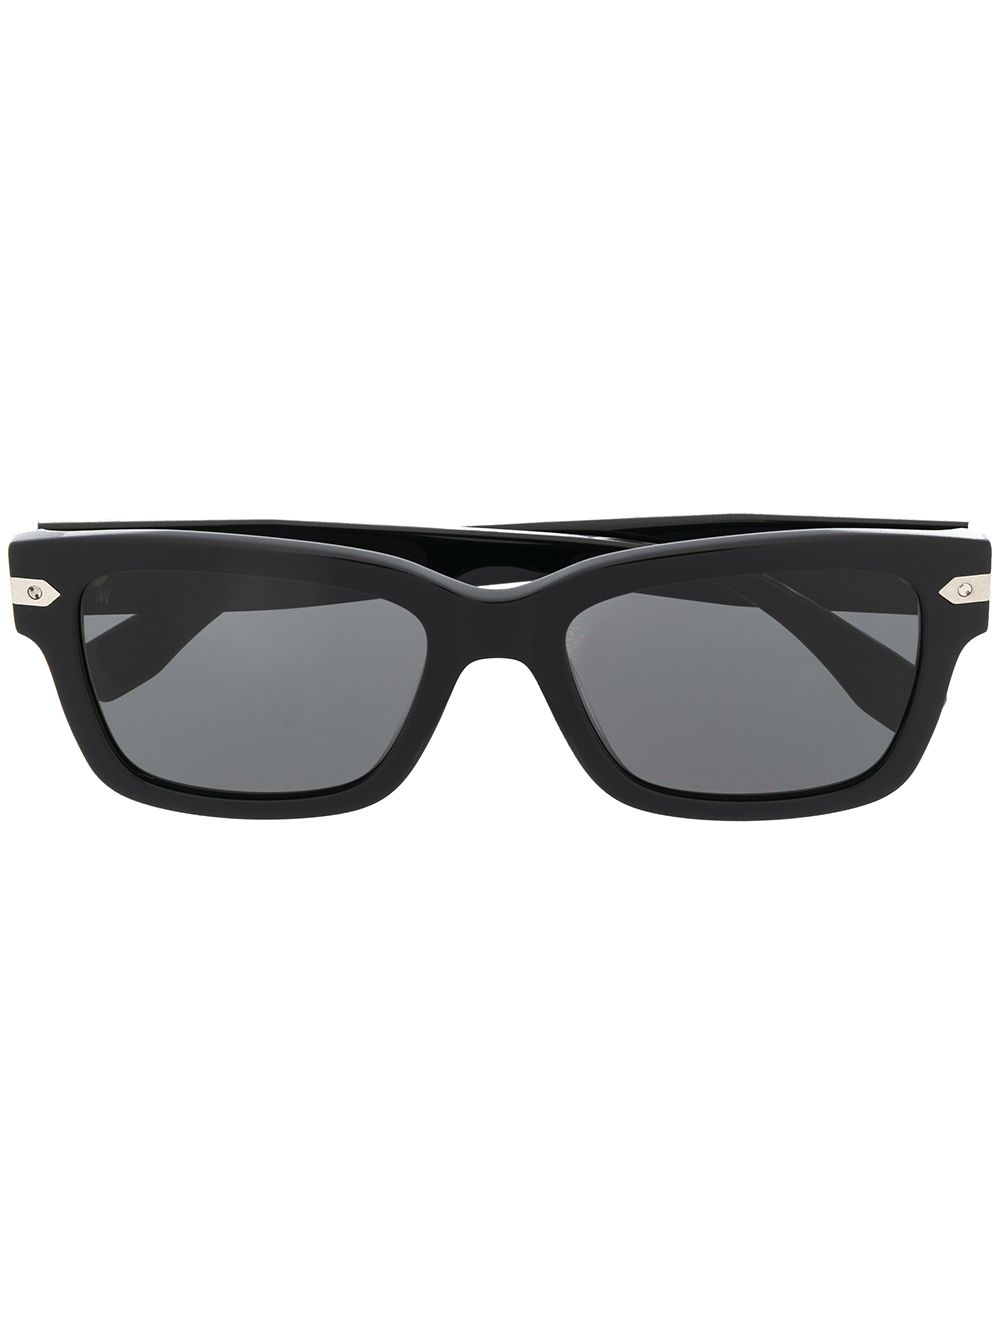 фото Hublot eyewear солнцезащитные очки в квадратной оправе